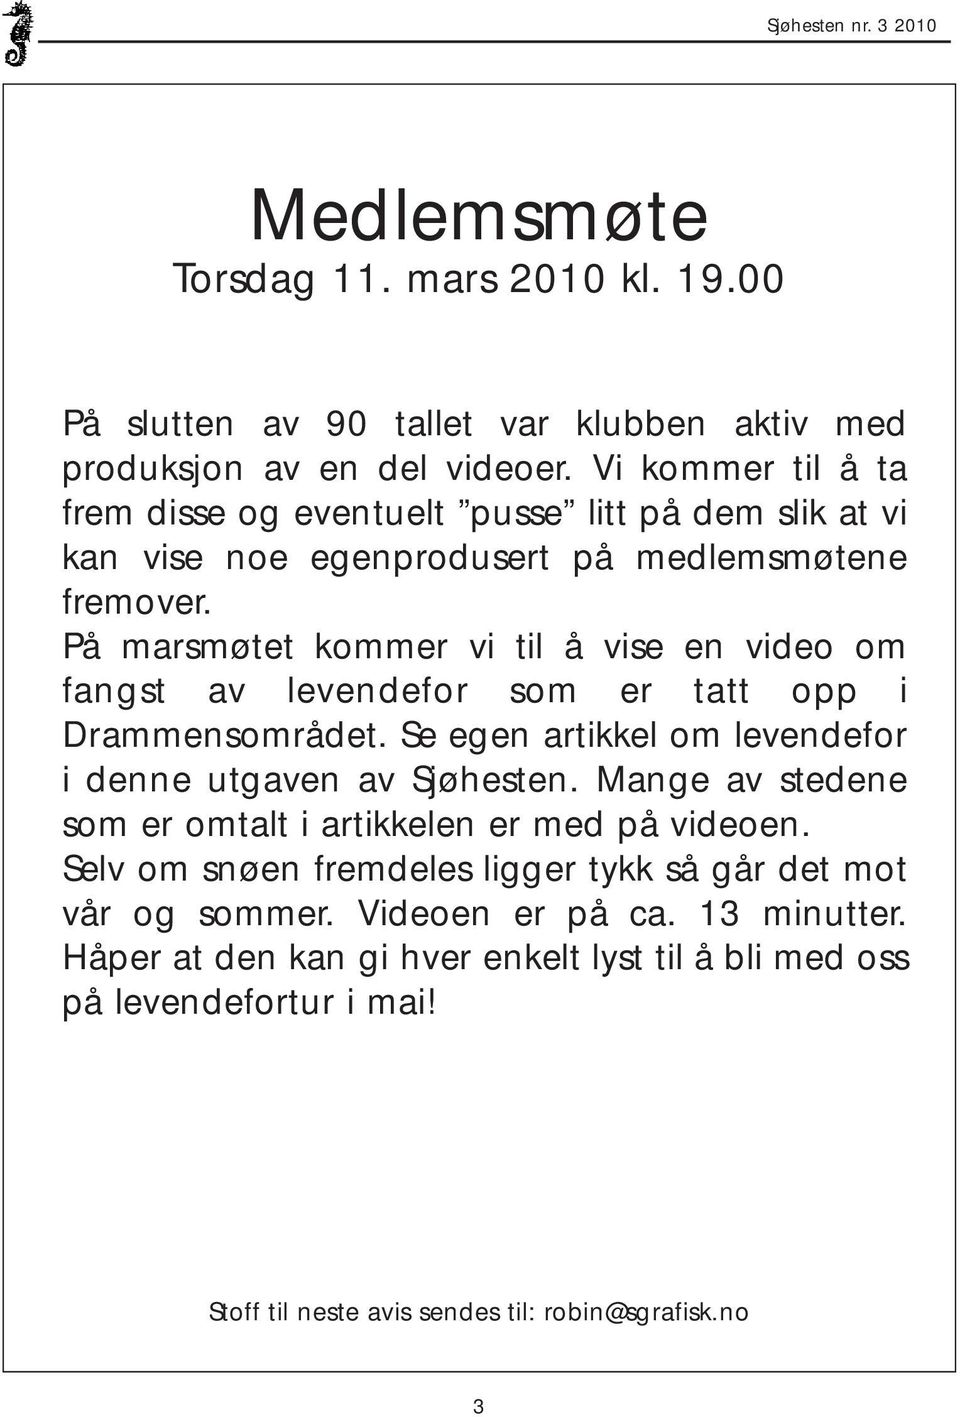 På marsmøtet kommer vi til å vise en video om fangst av levendefor som er tatt opp i Drammensområdet. Se egen artikkel om levendefor i denne utgaven av Sjøhesten.